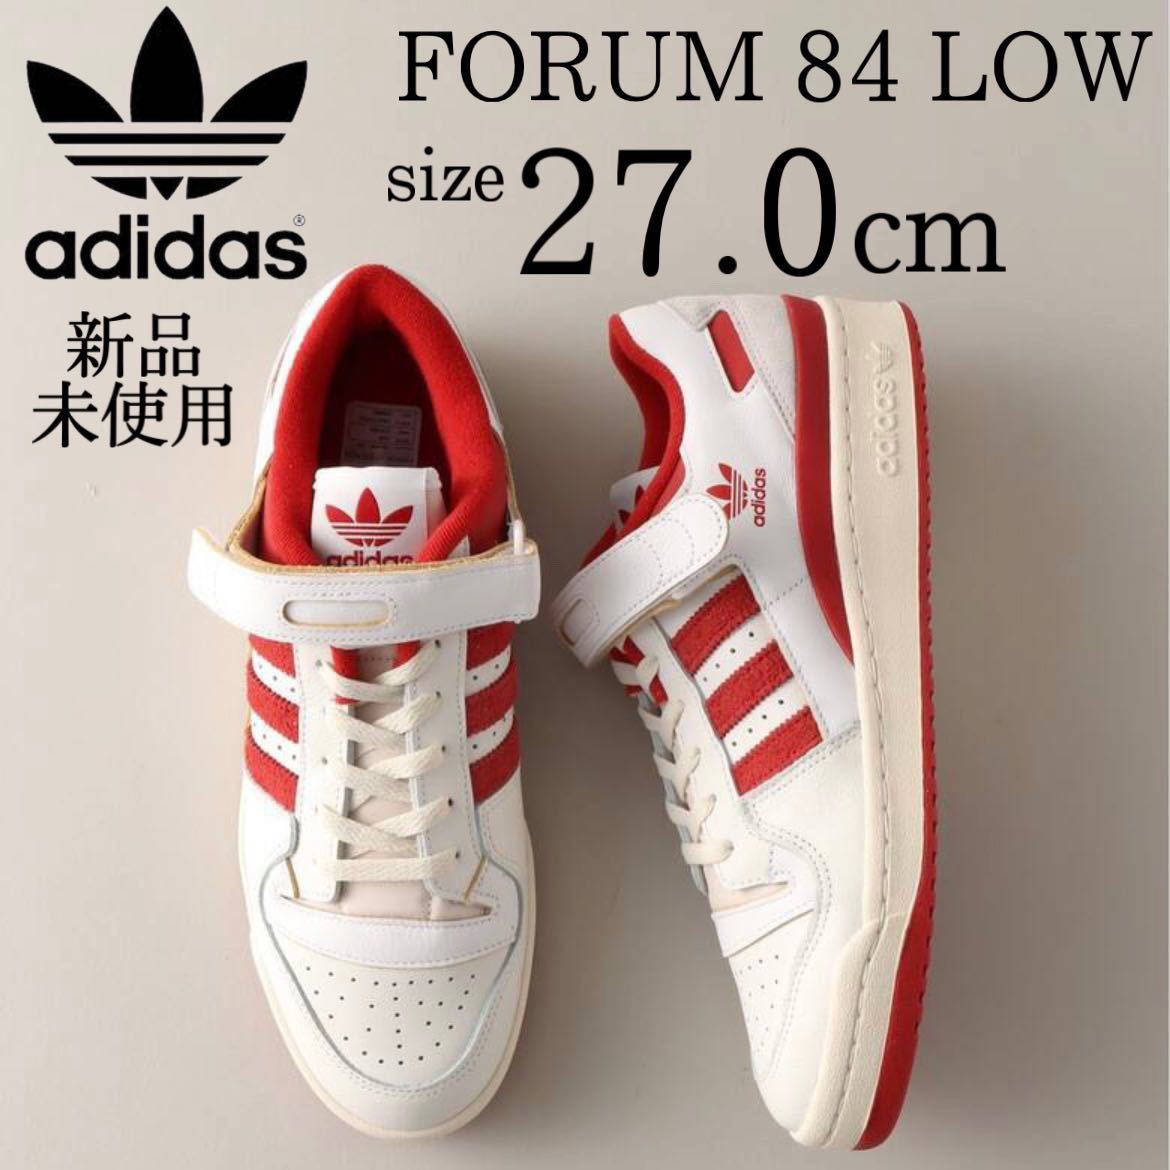 新品 adidas FORUM 84 LOW 27.0cm レザー レッド 赤